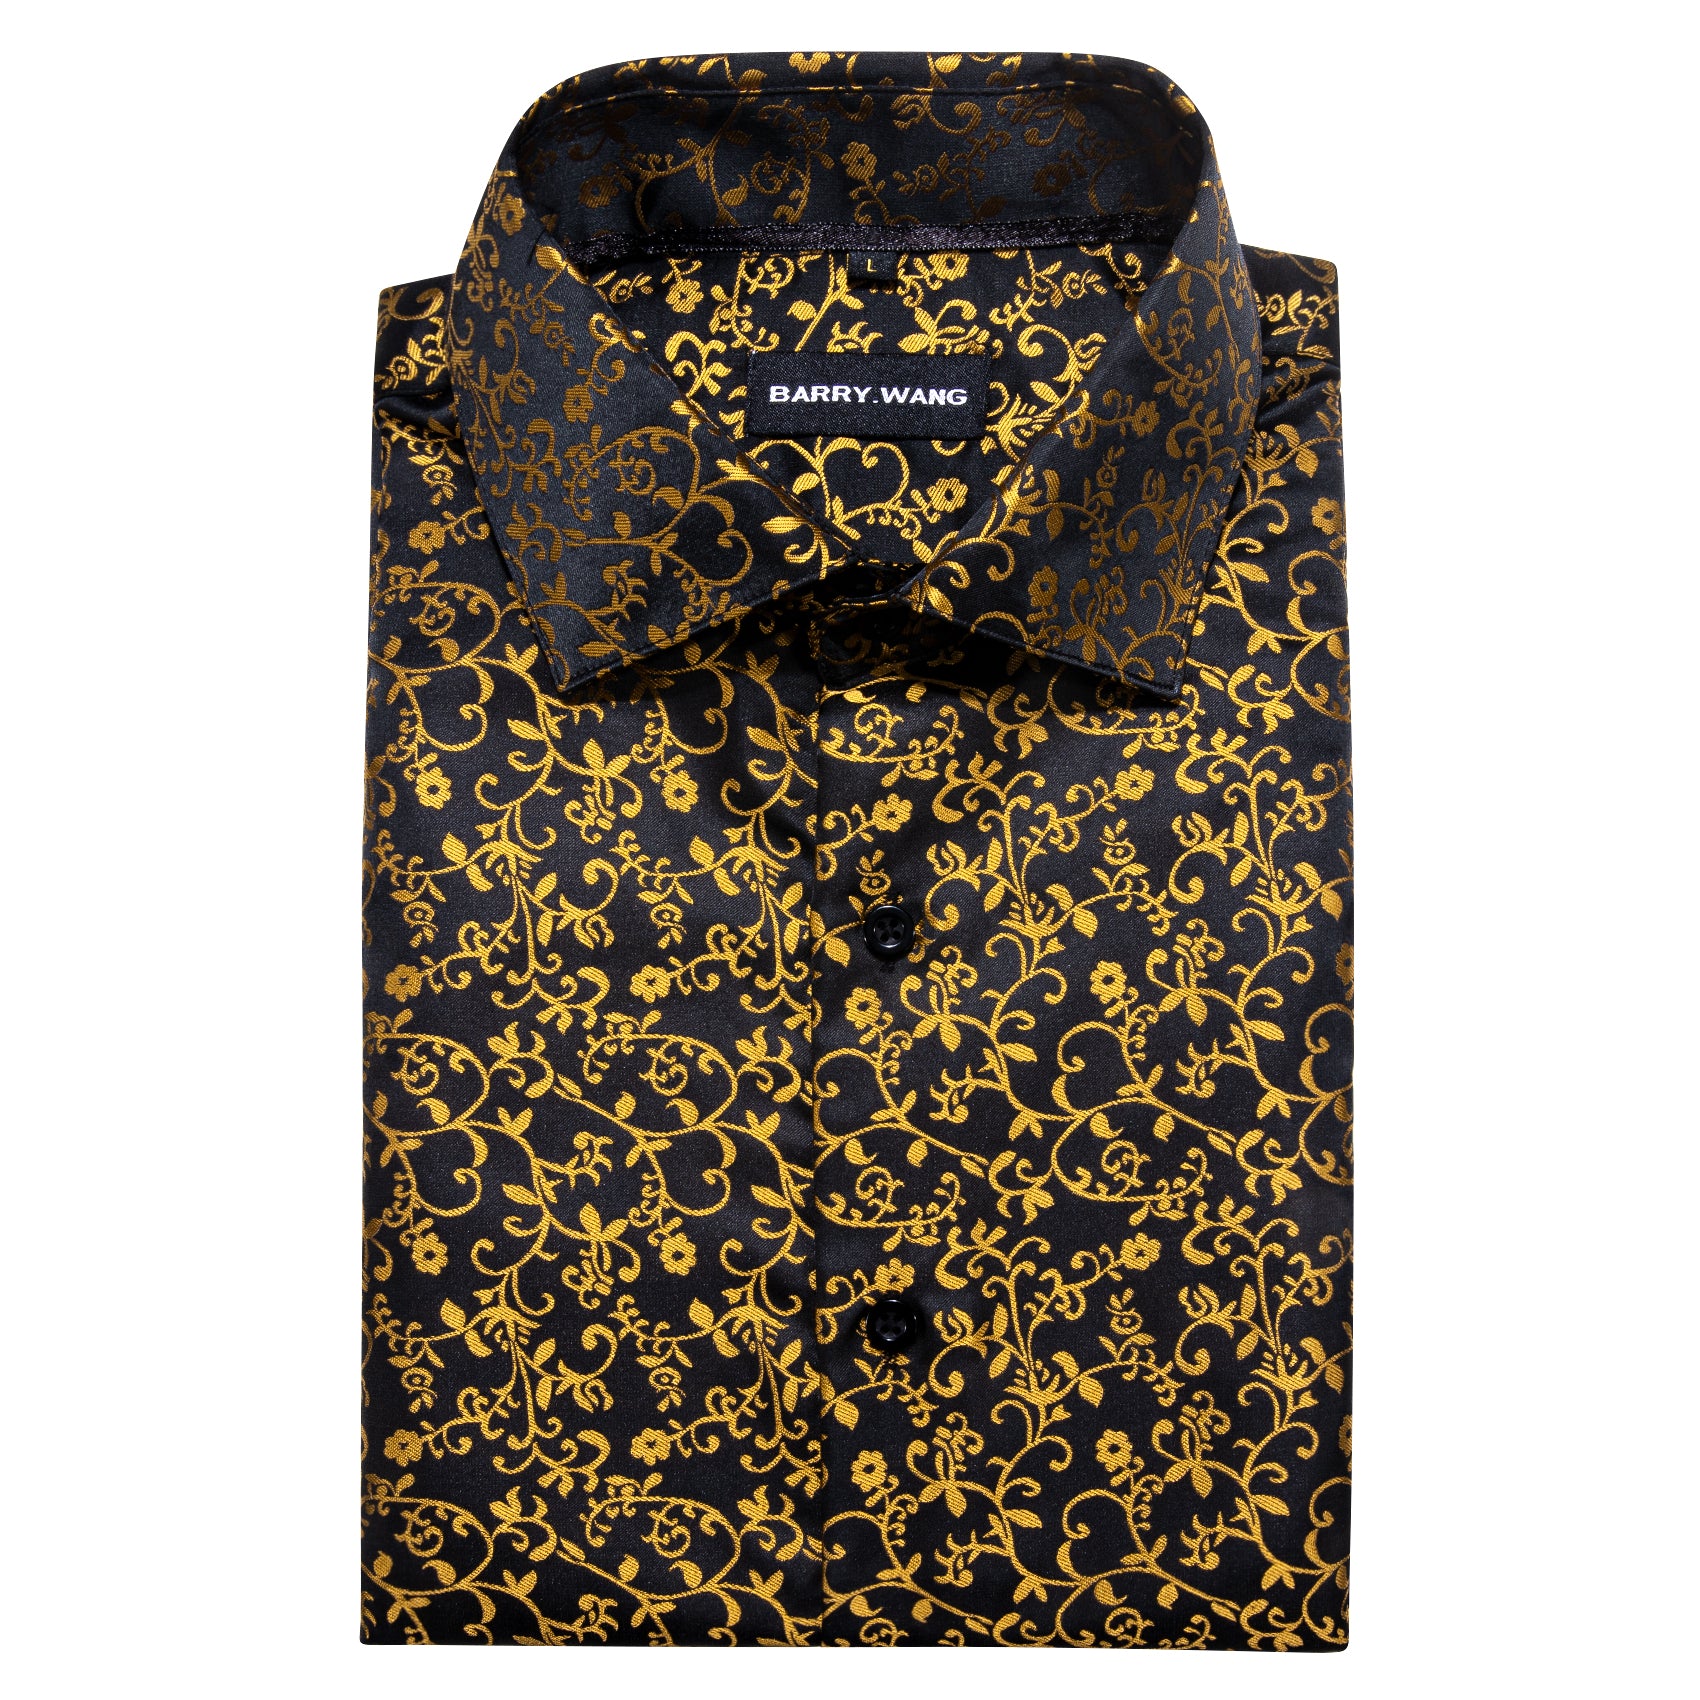 Barry.wang Black Gold Floral Silk Shirt